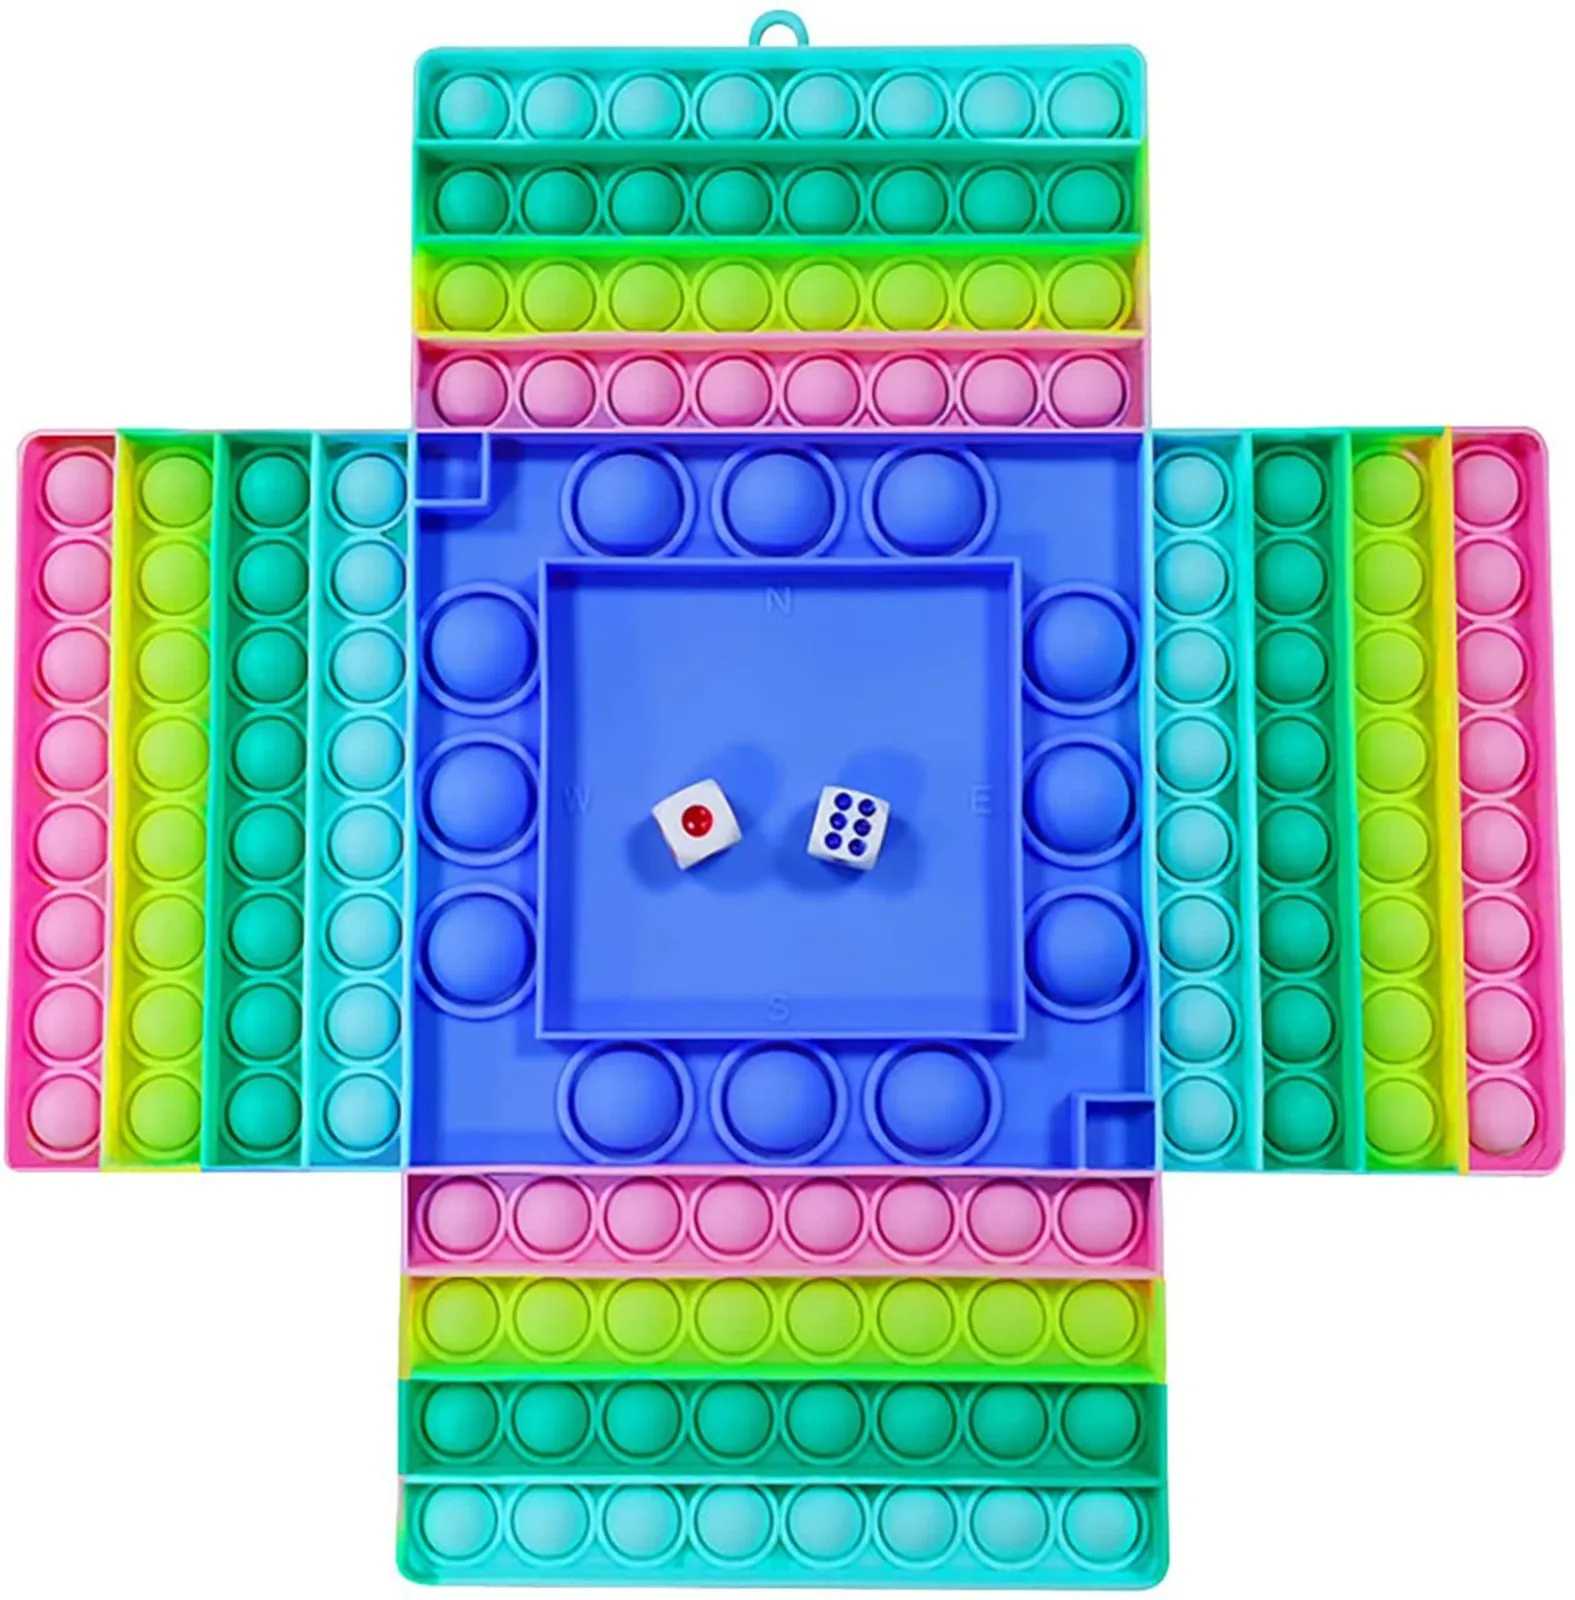 Large Pop It Game Board - Fidget Board Game - Big Popit Rainbow Chess Board  Push Bubble Fidget Toy - Large Bubble Popit Game - Fidget Sensory Toys for